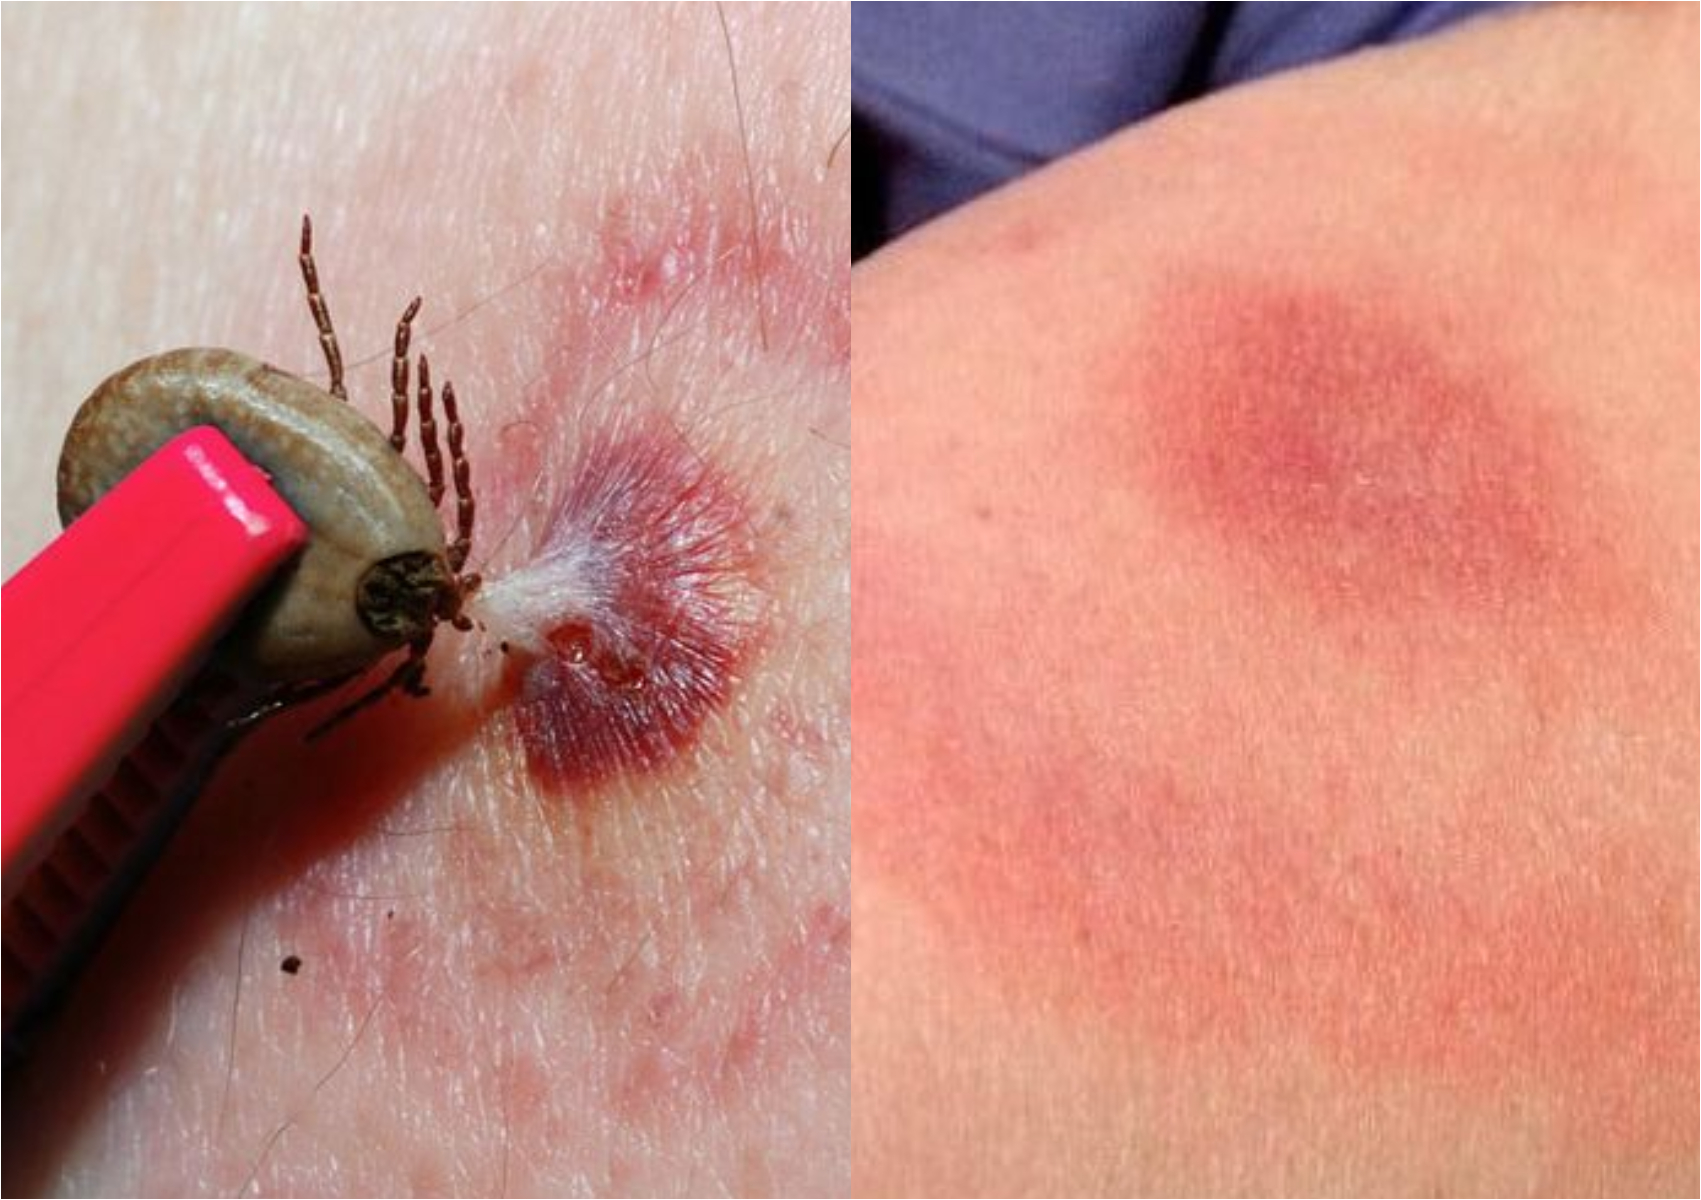 Νόσος του Lyme ή Βορρελίωση: Τα συμπτώματα και η θεραπεία της σοβαρής ασθένειας από τσιμπούρια 